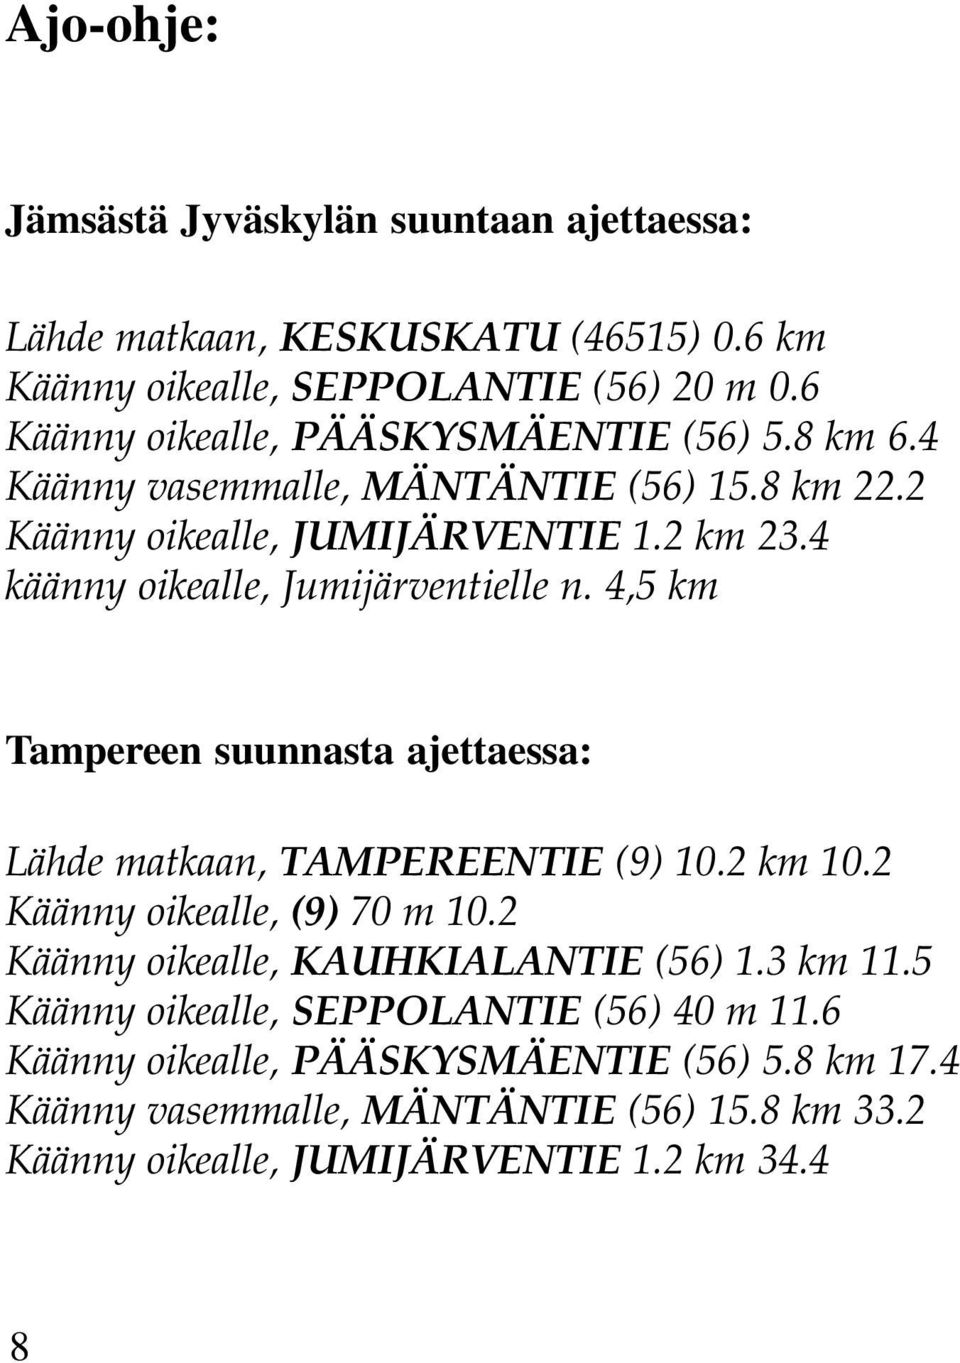 4 käänny oikealle, Jumijärventielle n. 4,5 km Tampereen suunnasta ajettaessa: Lähde matkaan, TAMPEREENTIE (9) 10.2 km 10.2 Käänny oikealle, (9) 70 m 10.